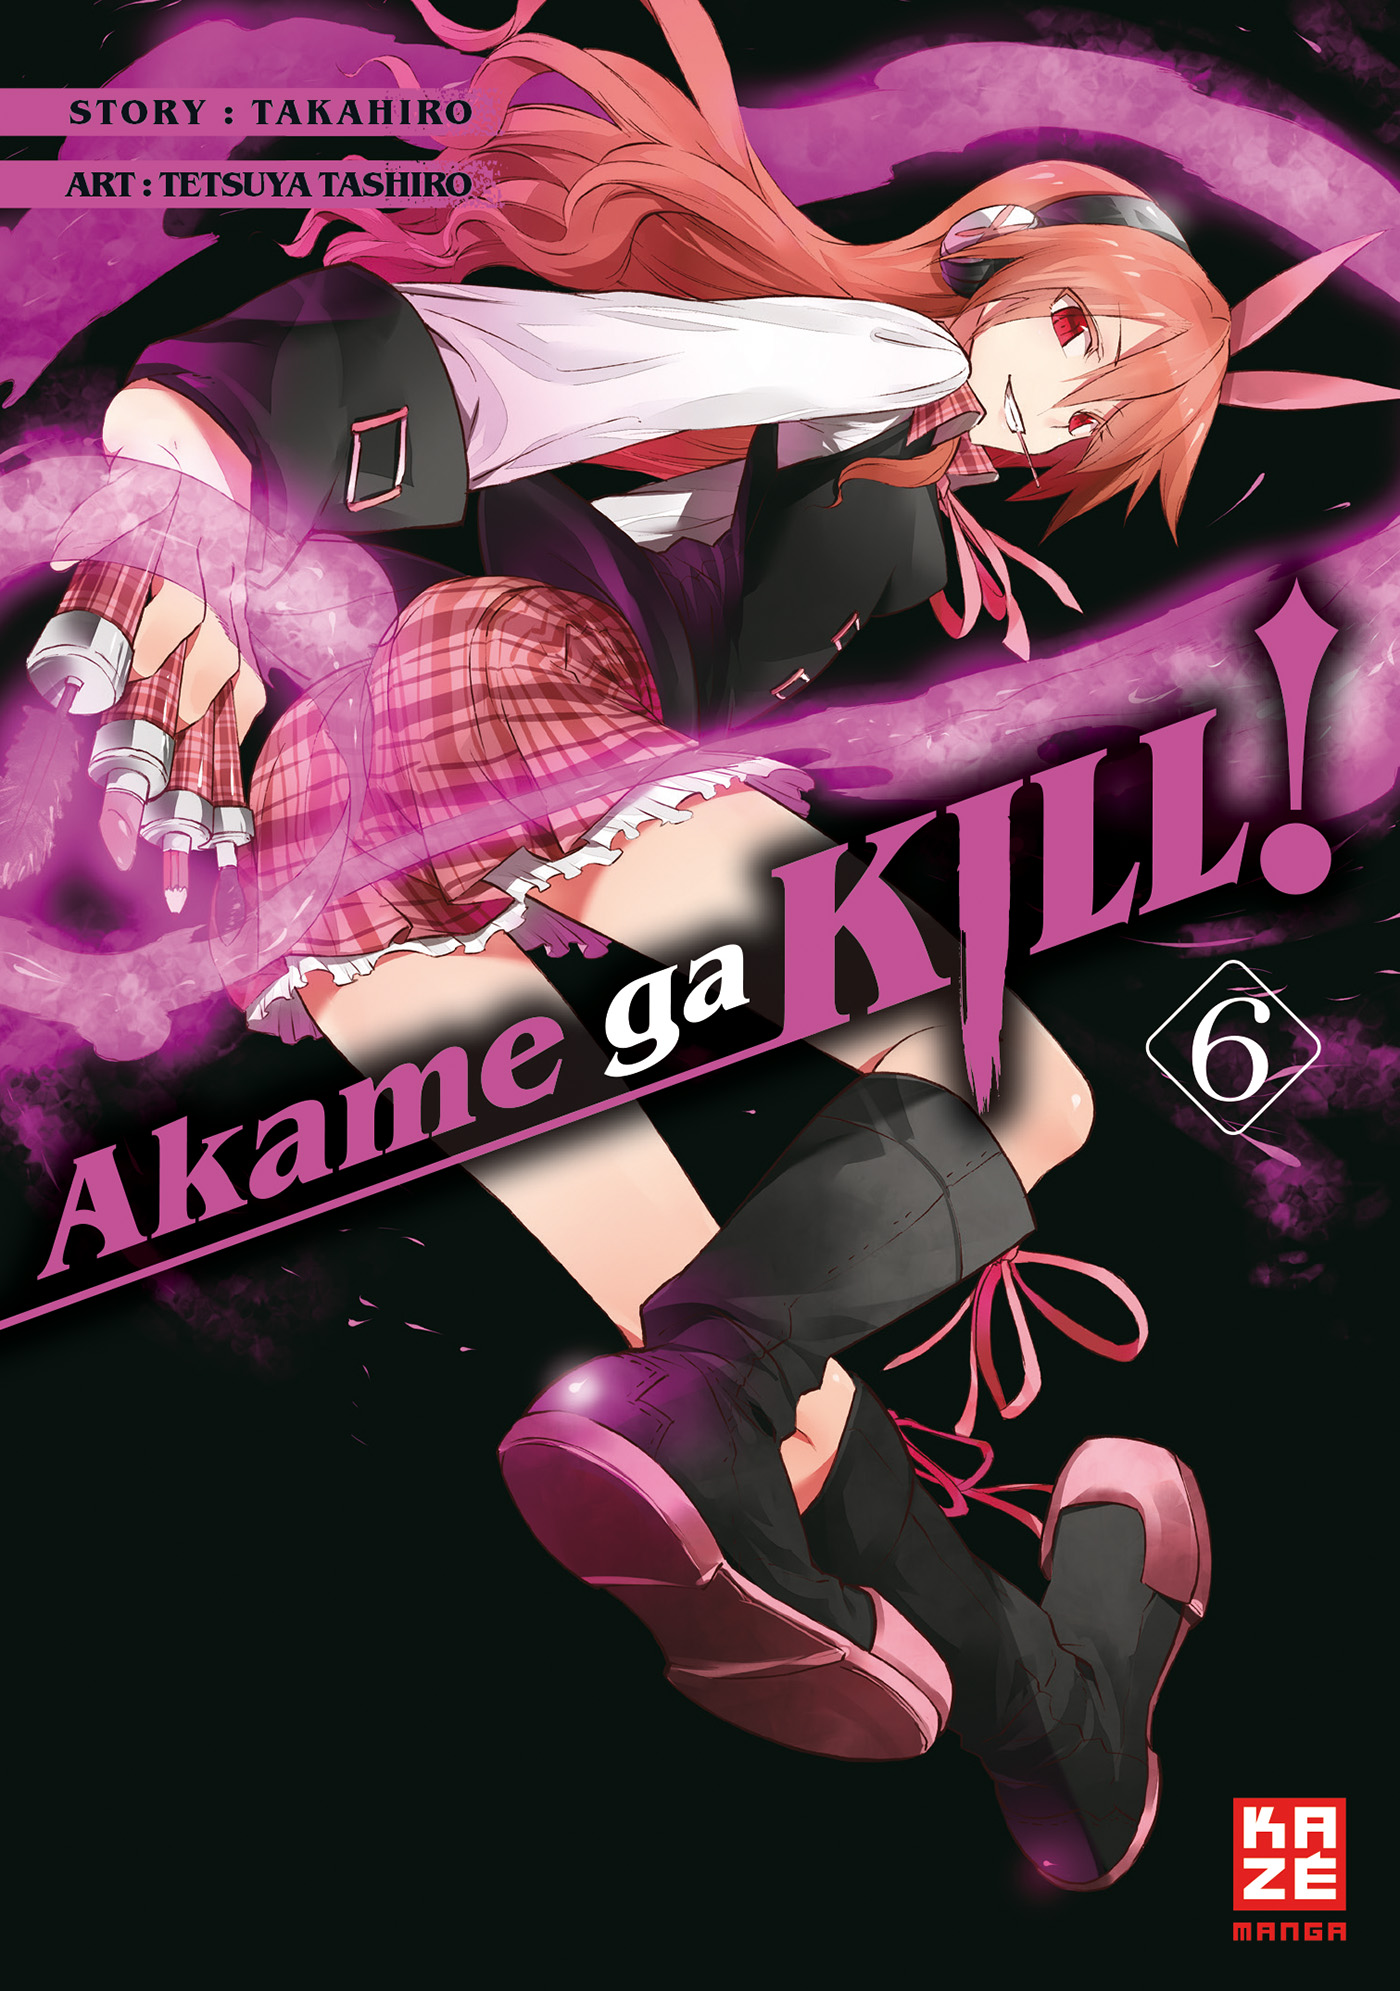 Band Ga 6 - Akame Kill!